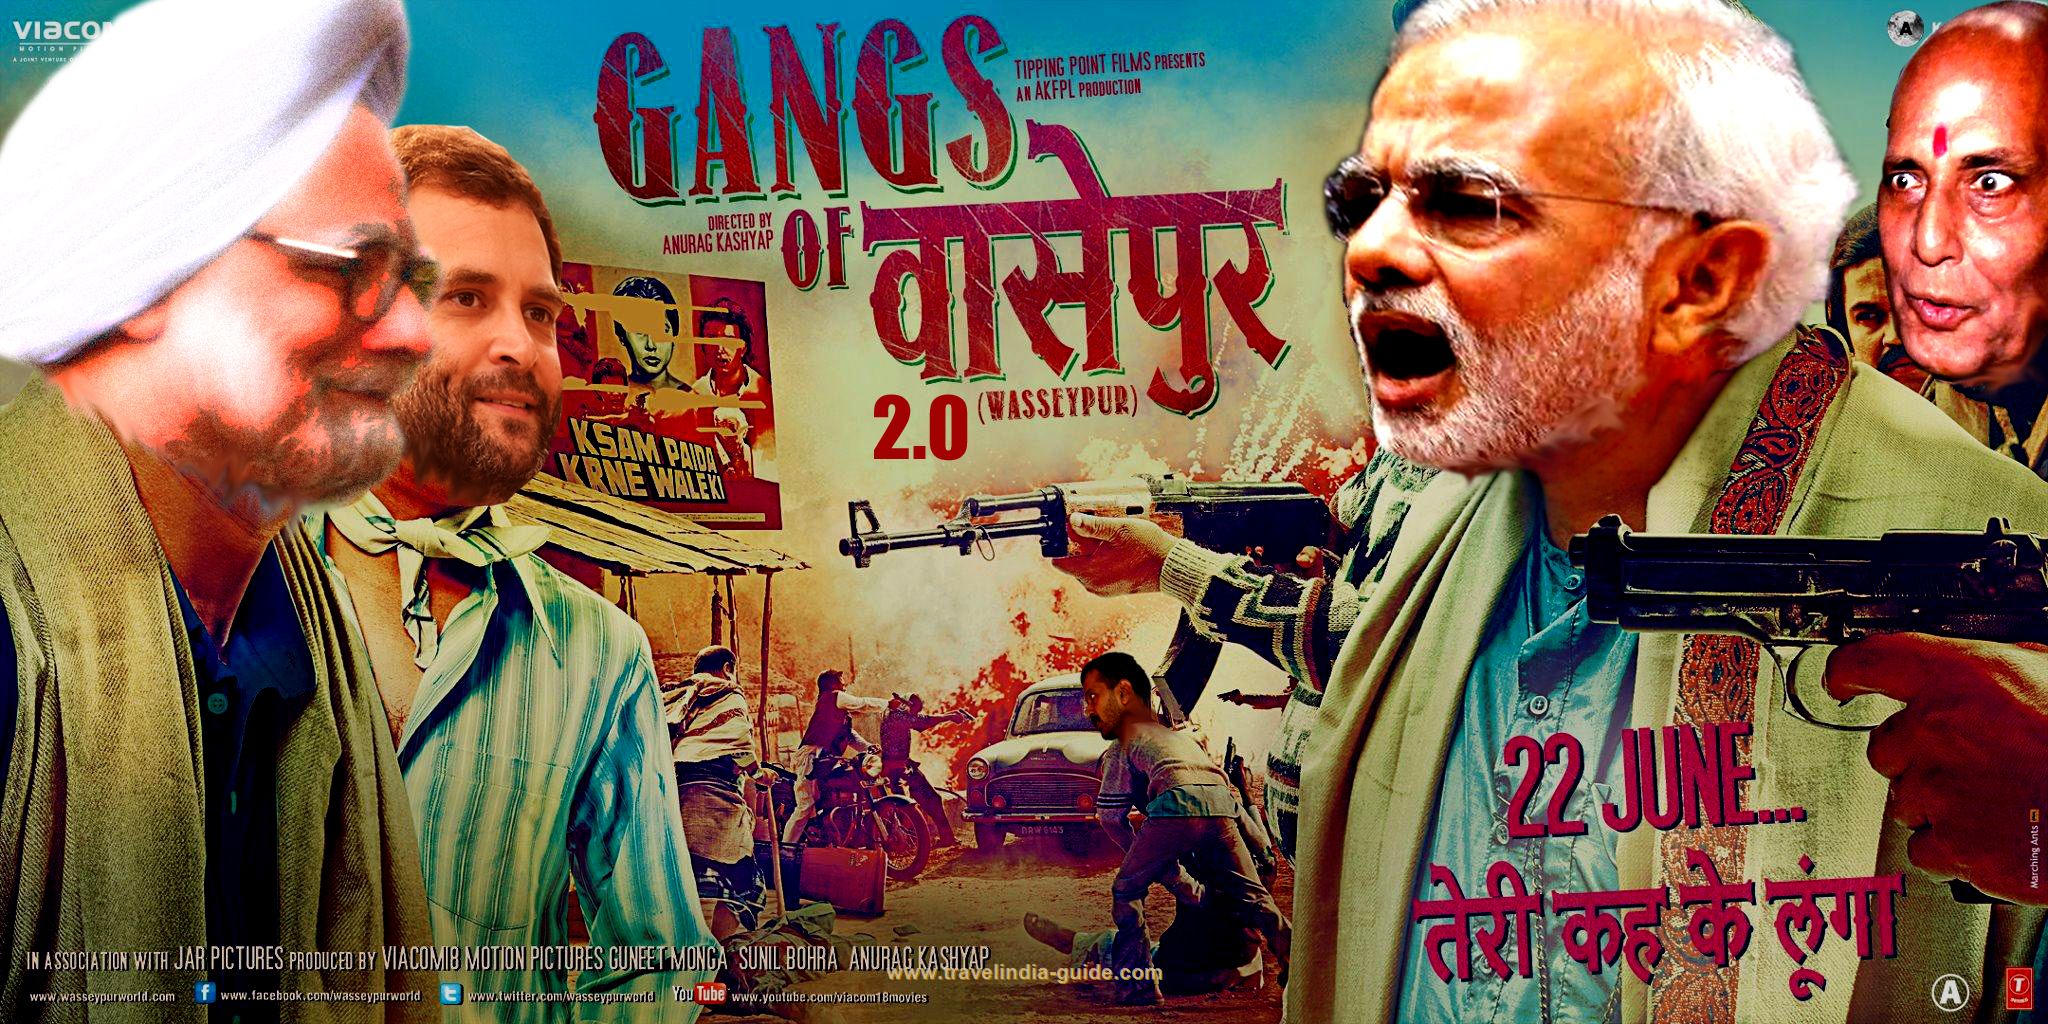 Gangs of Wasseypur 2.0